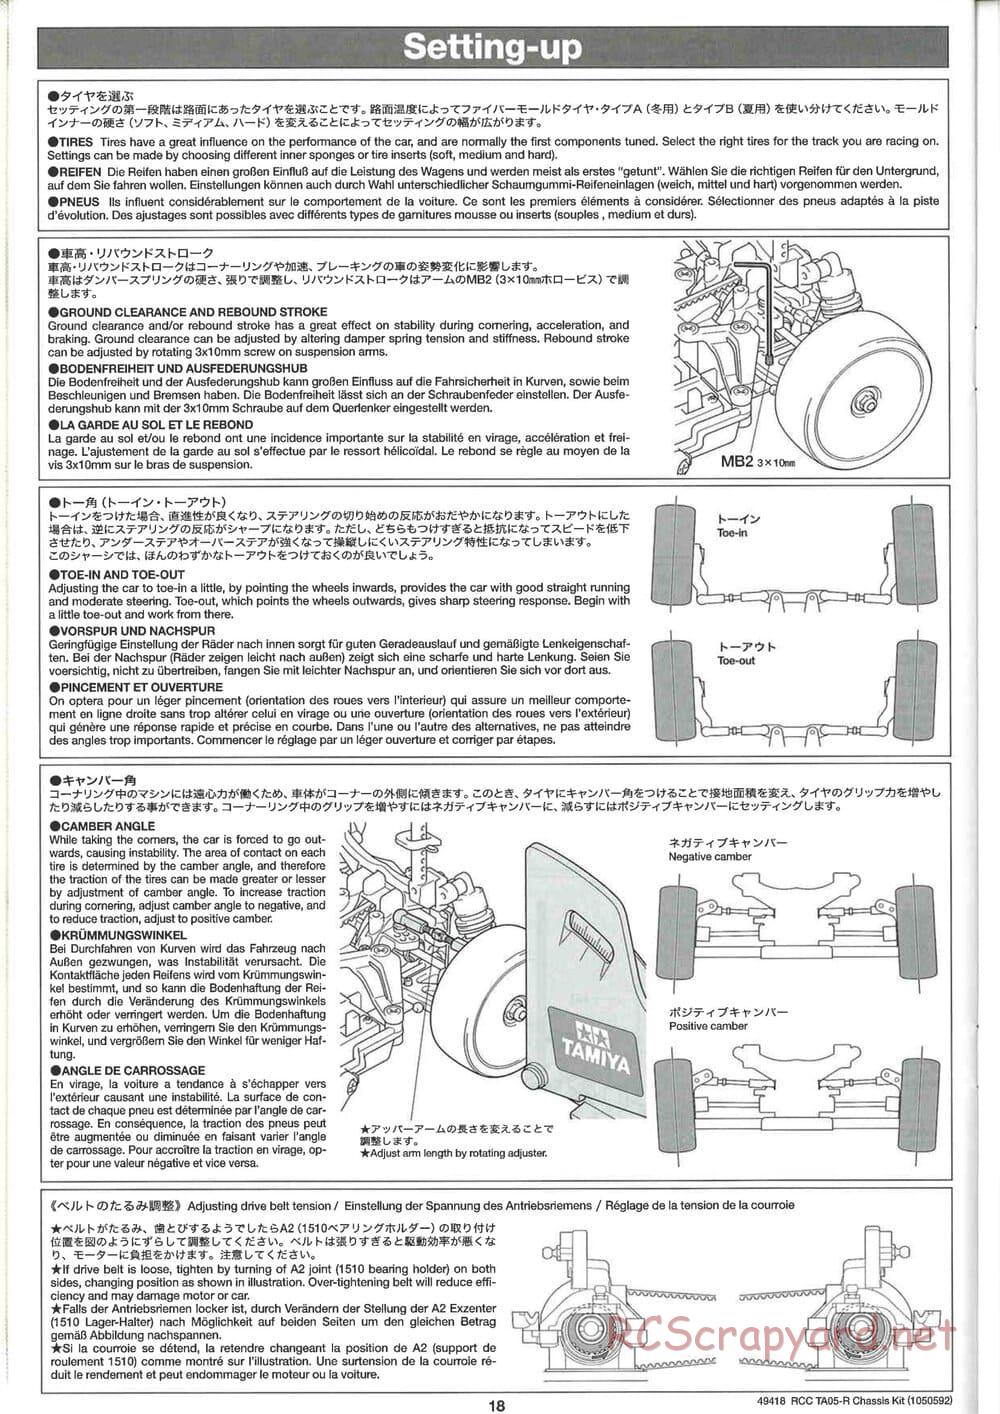 Tamiya - TA05-R Chassis - Manual - Page 18